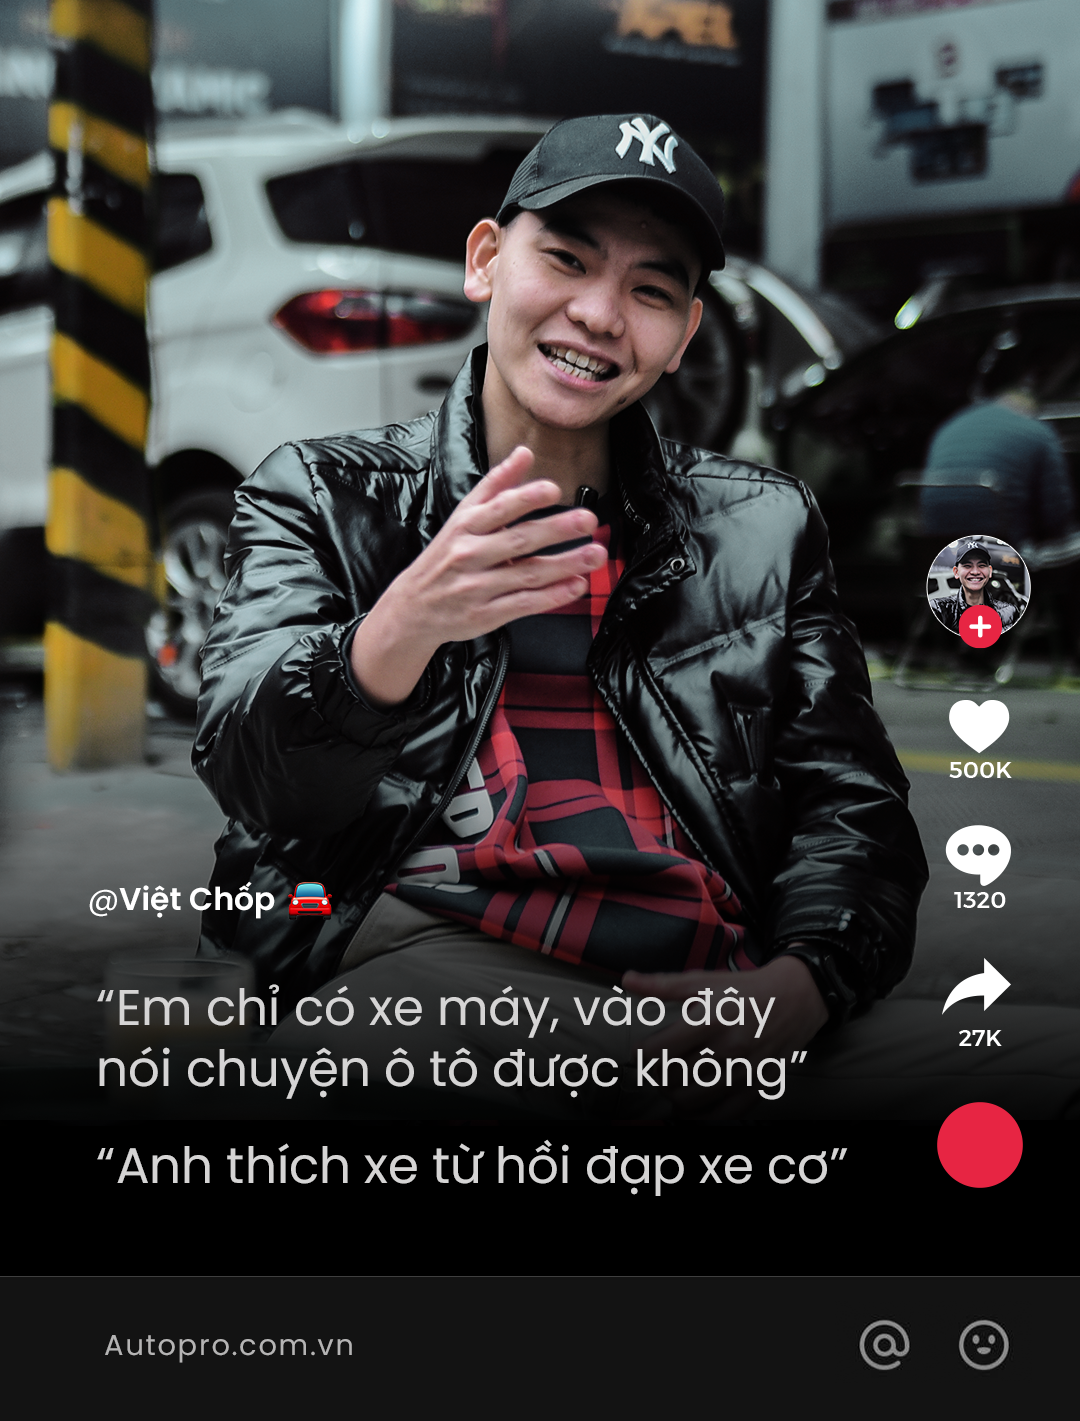 Idol Việt: Để lại ấn tượng khó quên với ngôi sao Idol Việt trong hình ảnh này. Sự nghiệp đầy thăng trầm và tài năng của họ sẽ thật đáng để bạn khám phá.